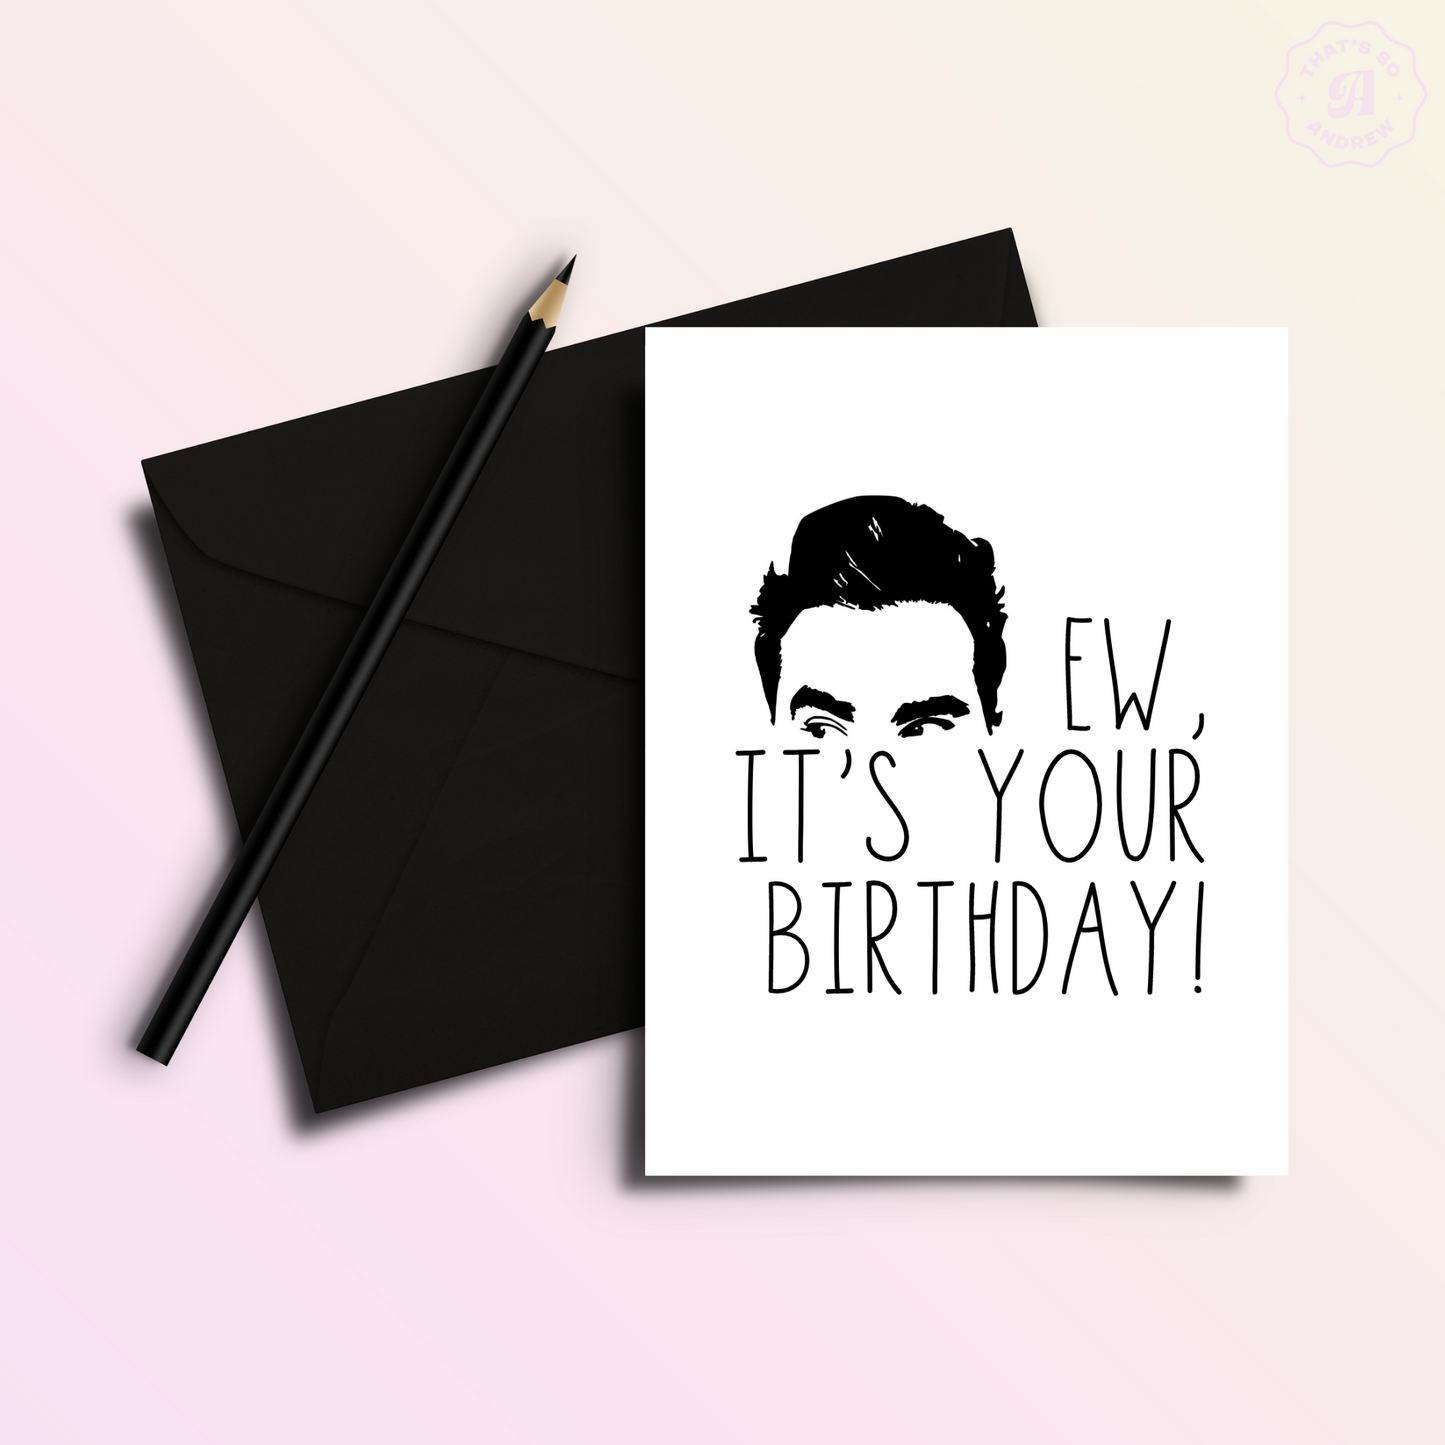 EW, It's Your Birthday - David Rose Birthday Card